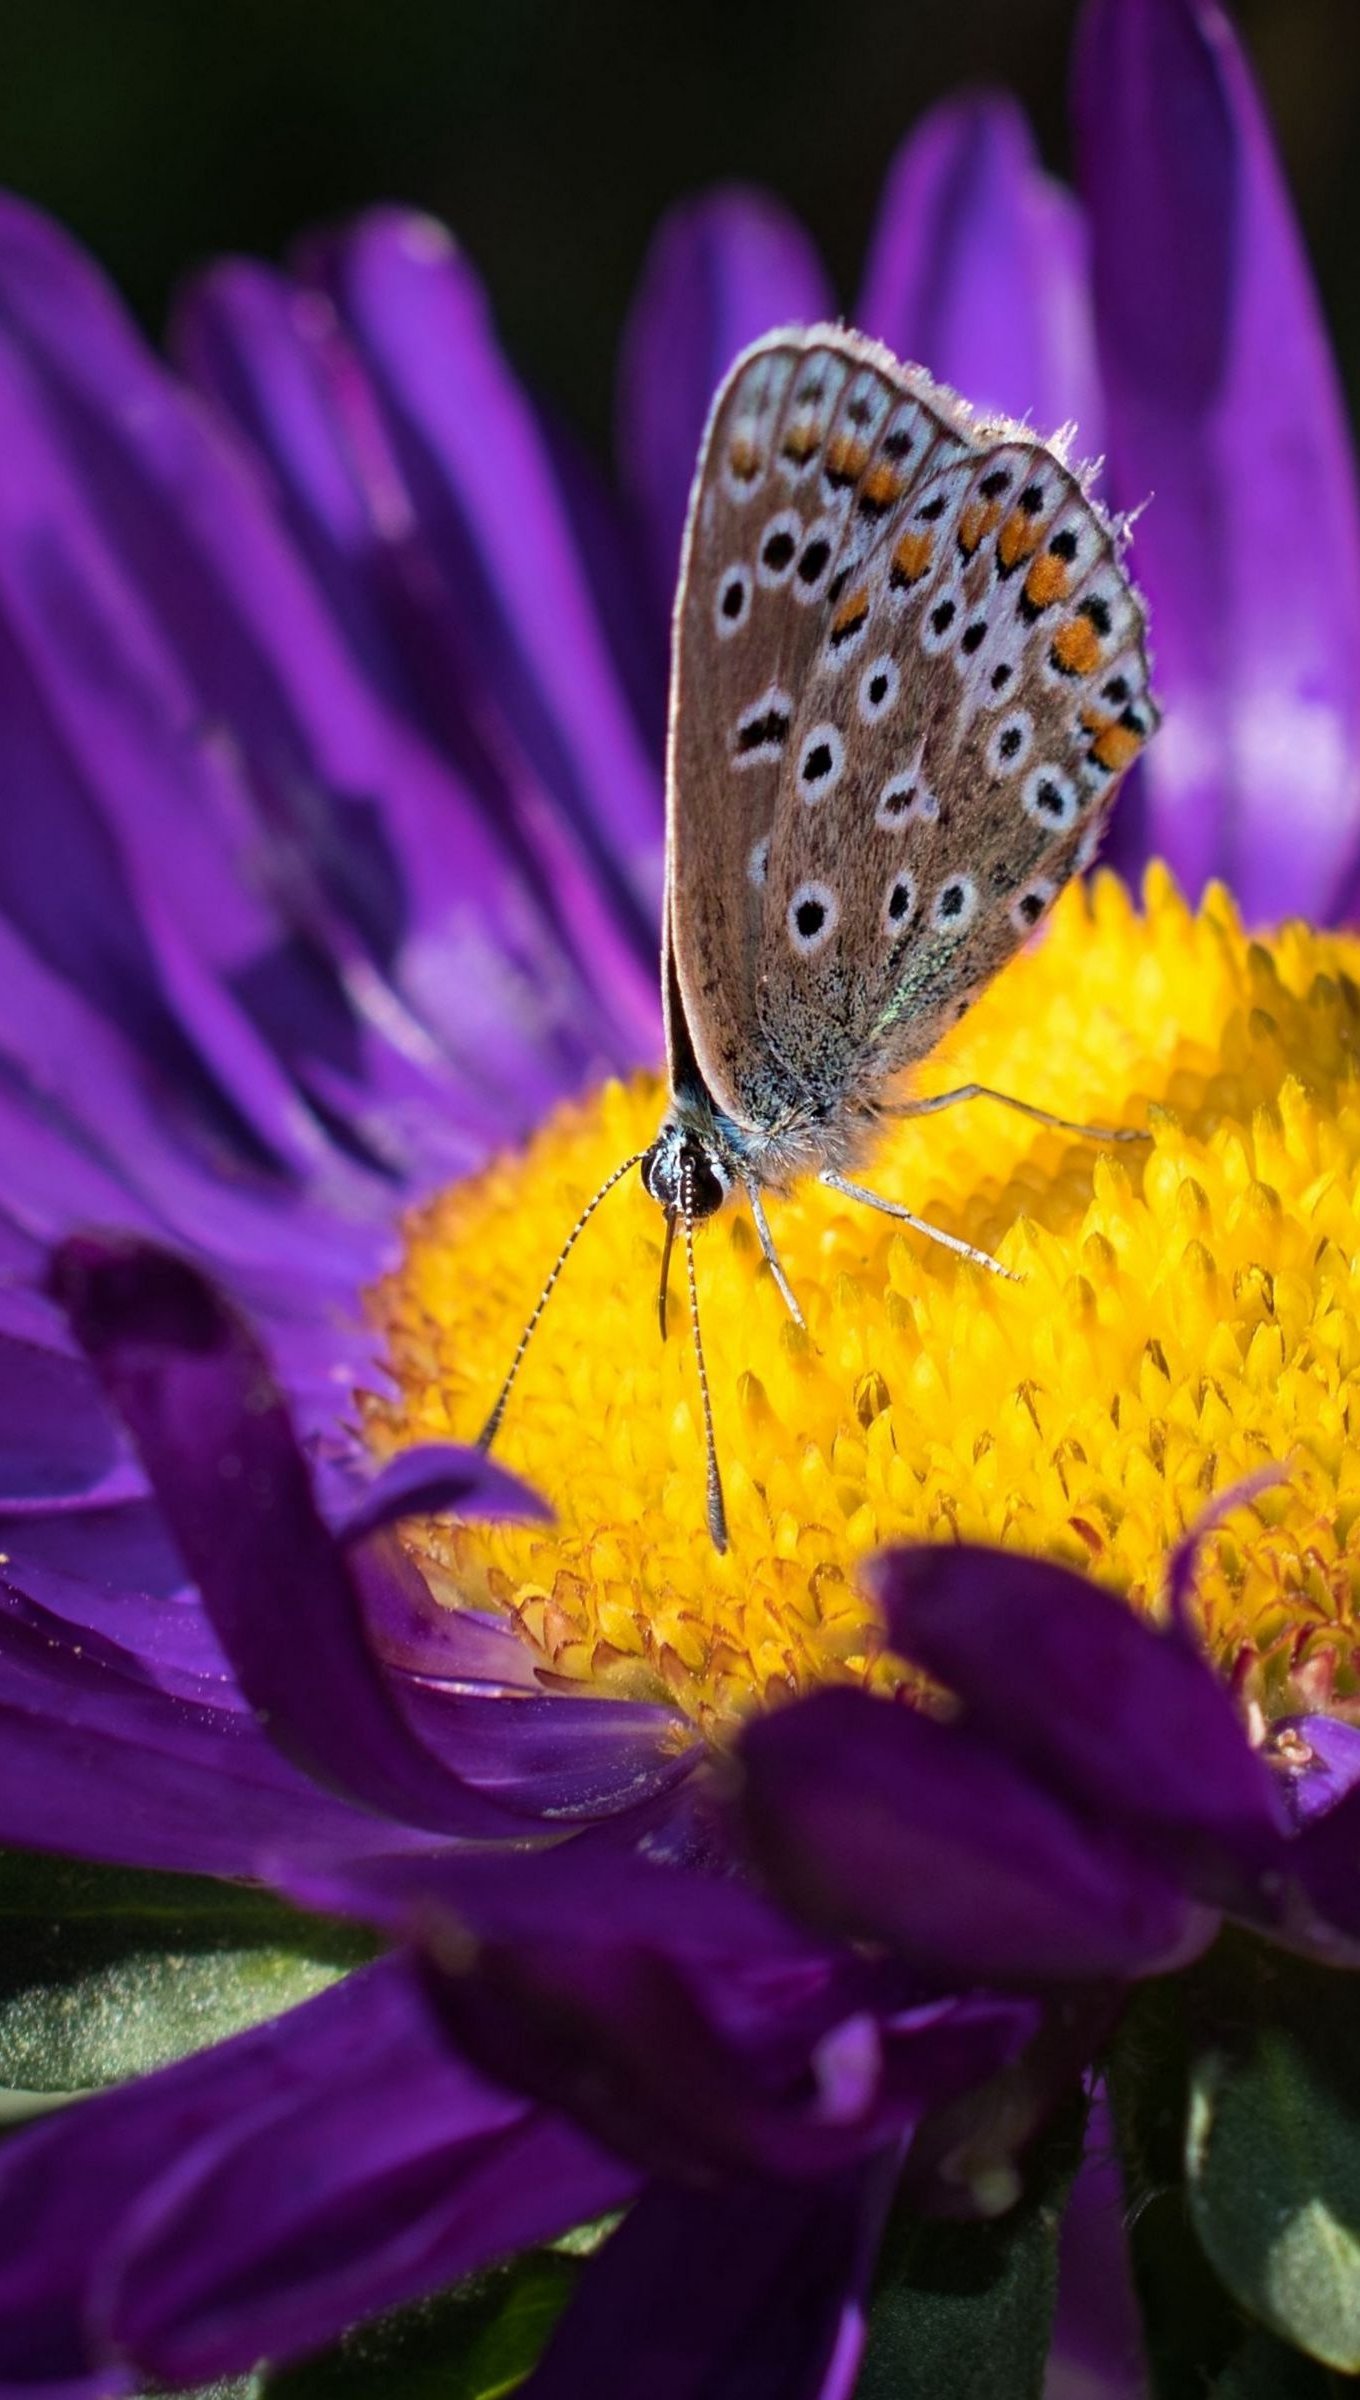 Butterfly on purple flower Wallpaper 4k Ultra HD ID:10659